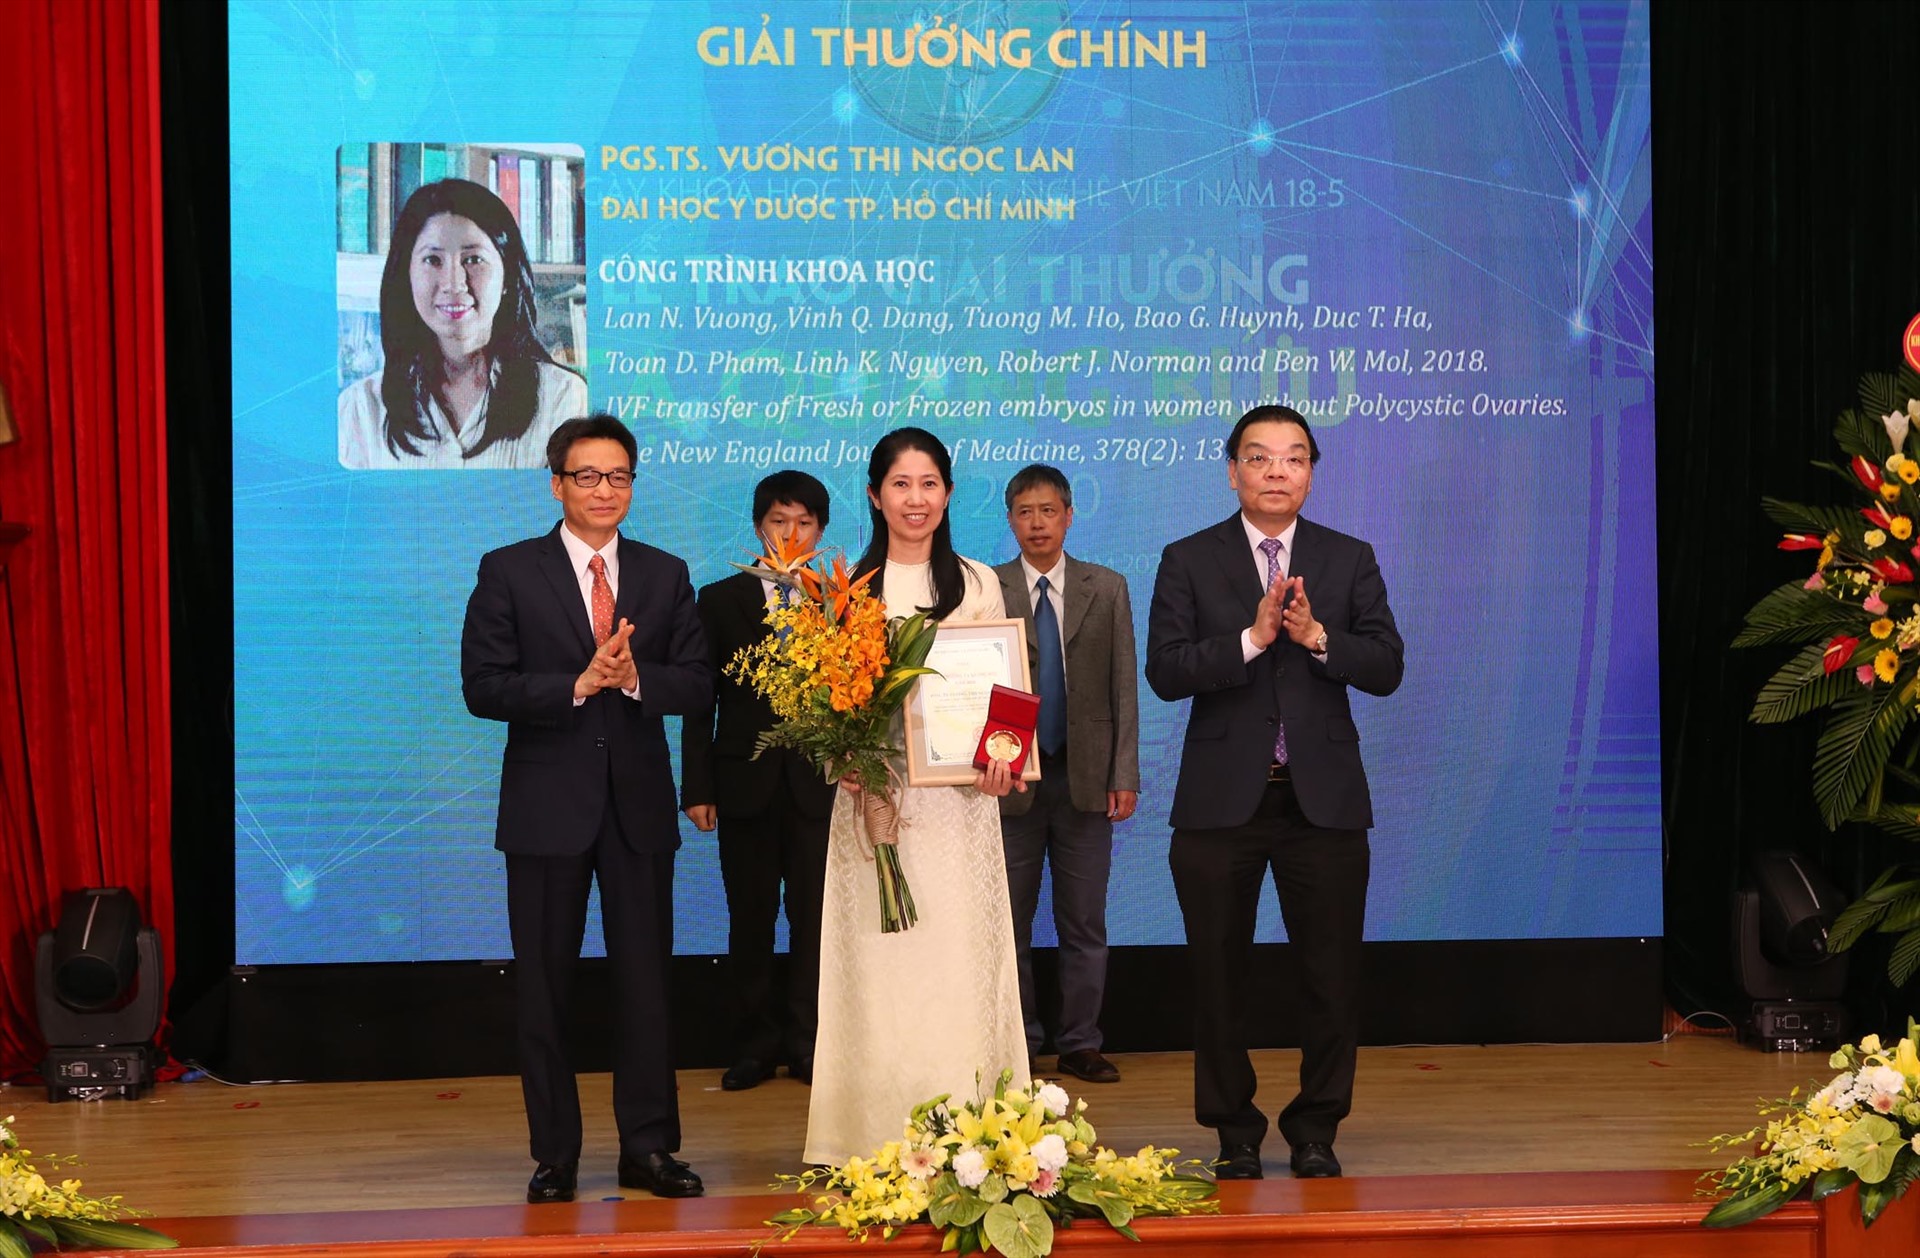 Phó thủ tướng Vũ Đức Đam (ngoài cùng bên trái) và Bộ trưởng Bộ KH&CN Chu Ngọc Anh (ngoài cùng bên phải) trao giải thưởng Tạ Quang Bửu cho PGS.TS Vương Thị Ngọc Lan. Ảnh: PV